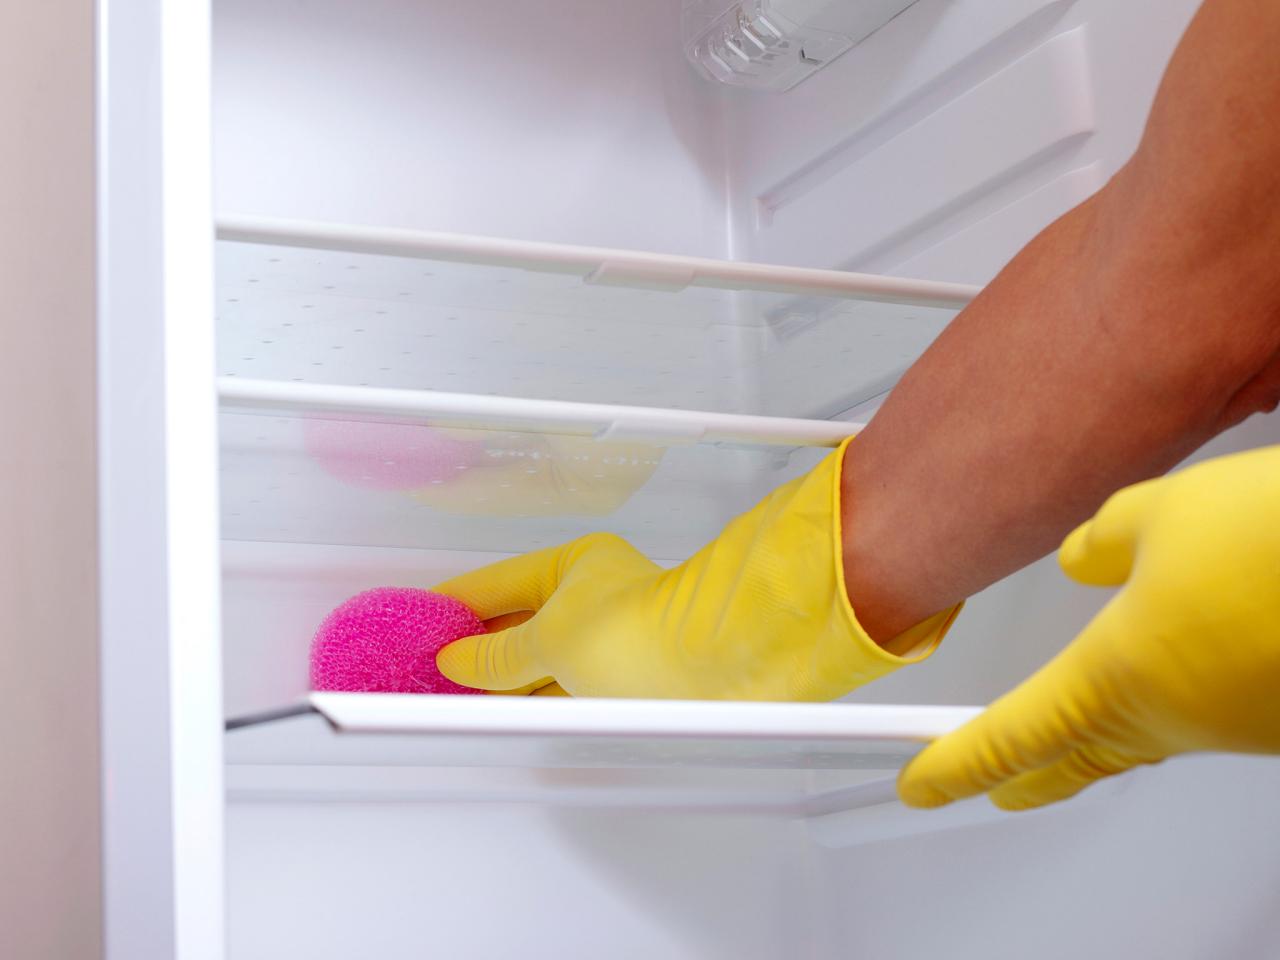 نصائح هامه لتنظيف الثلاجة | احسن انواع الاجهزة الكهربائية  1476438885610